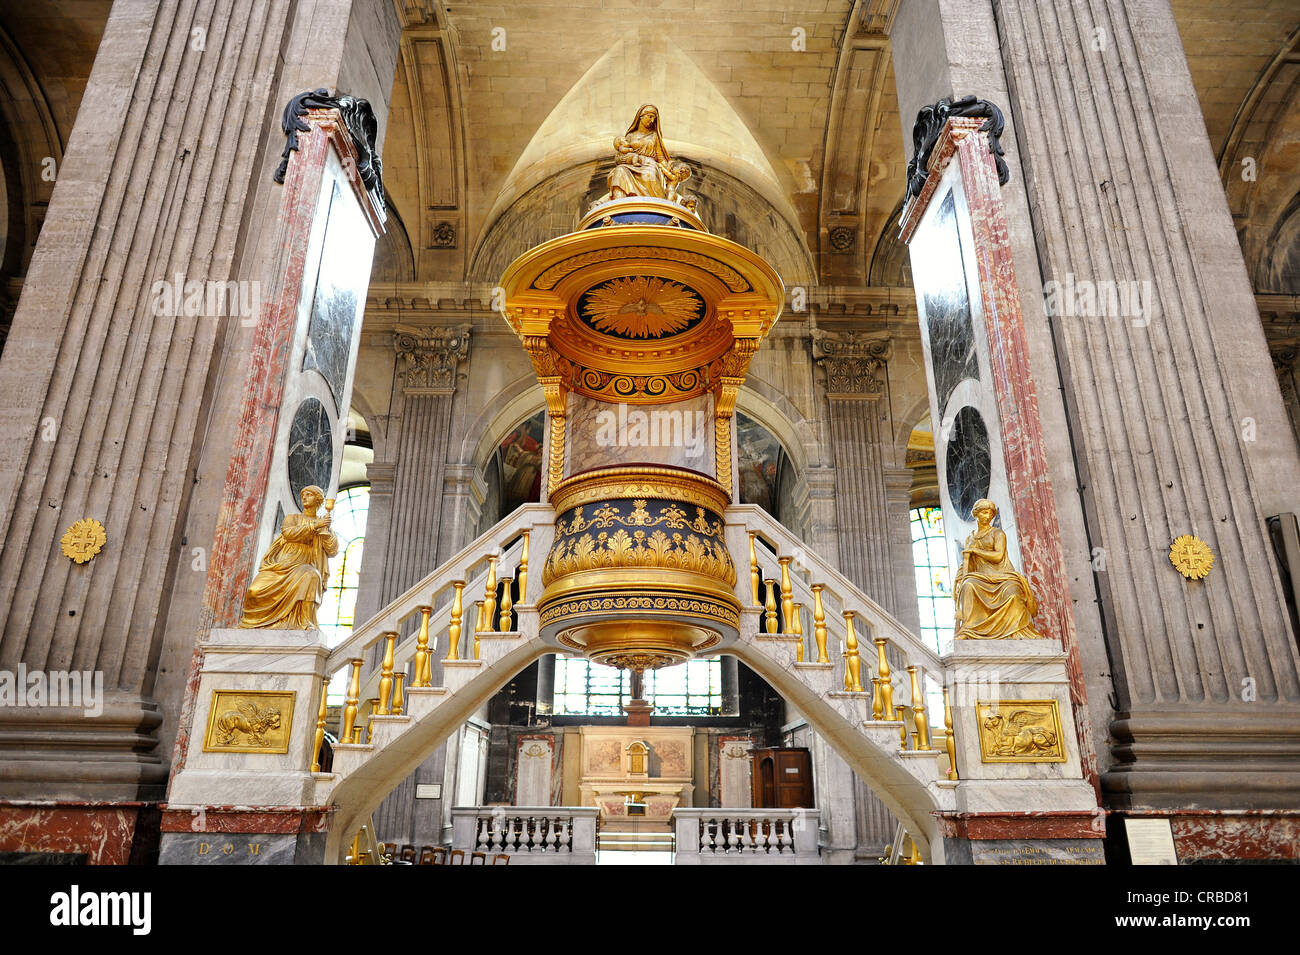 Storico, golden ornato pulpito La Chaire à Prêcher, progettata da Charles de Wailly, chiesa parrocchiale di Saint Sulpice de Foto Stock